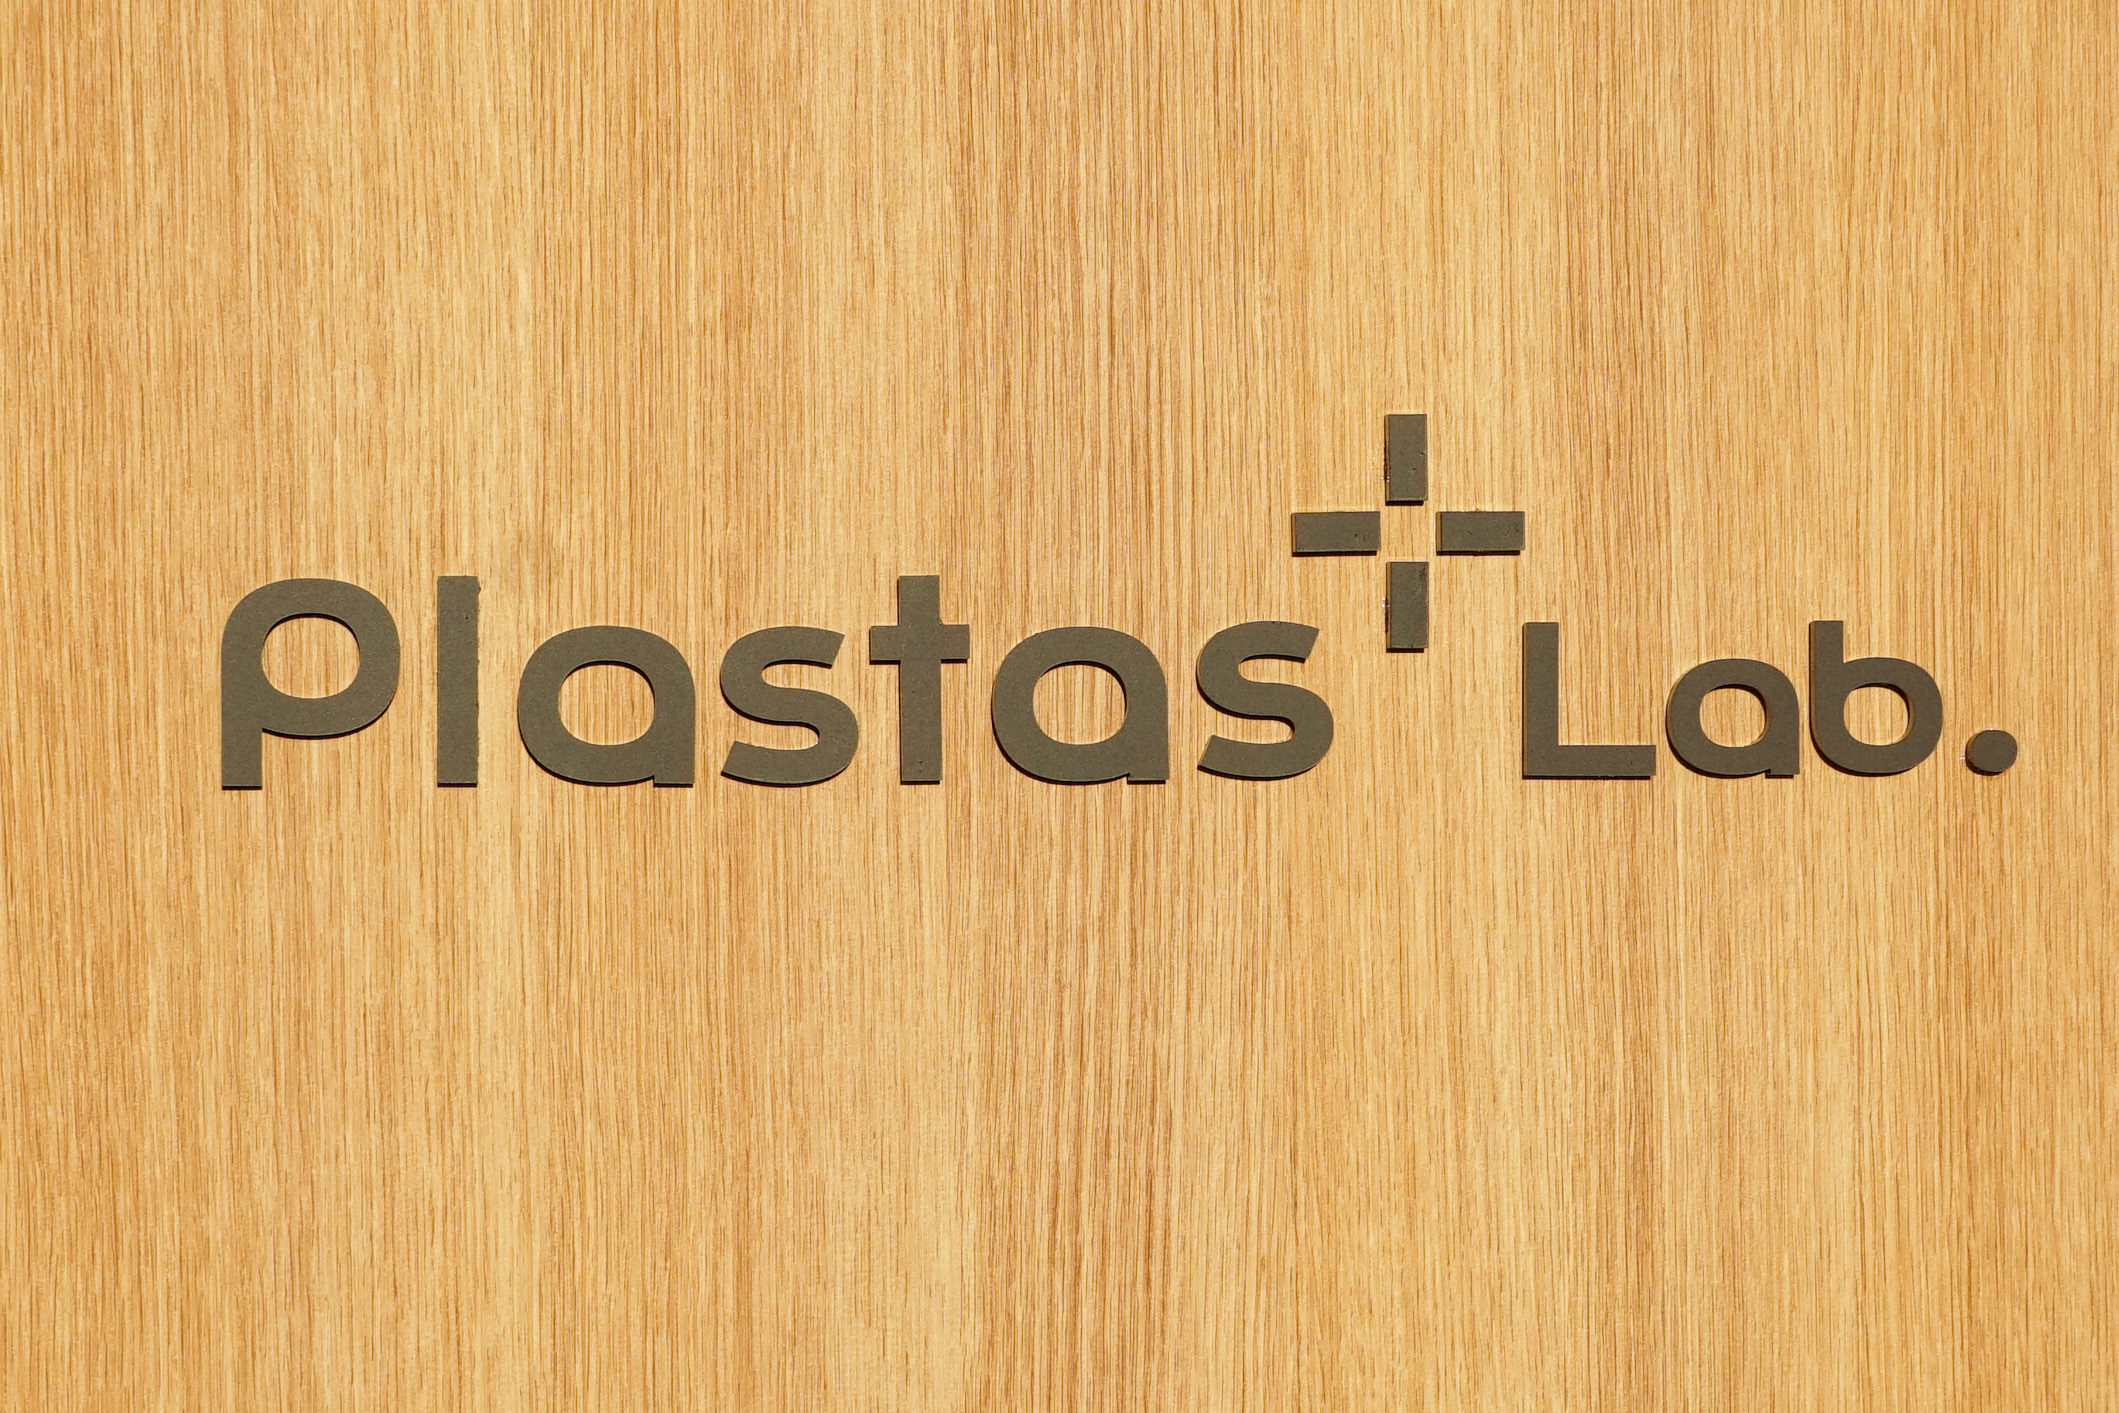 大気圧プラズマ技術の開発拠点「Plastas Lab.」がYahoo!ニュースに掲載されました